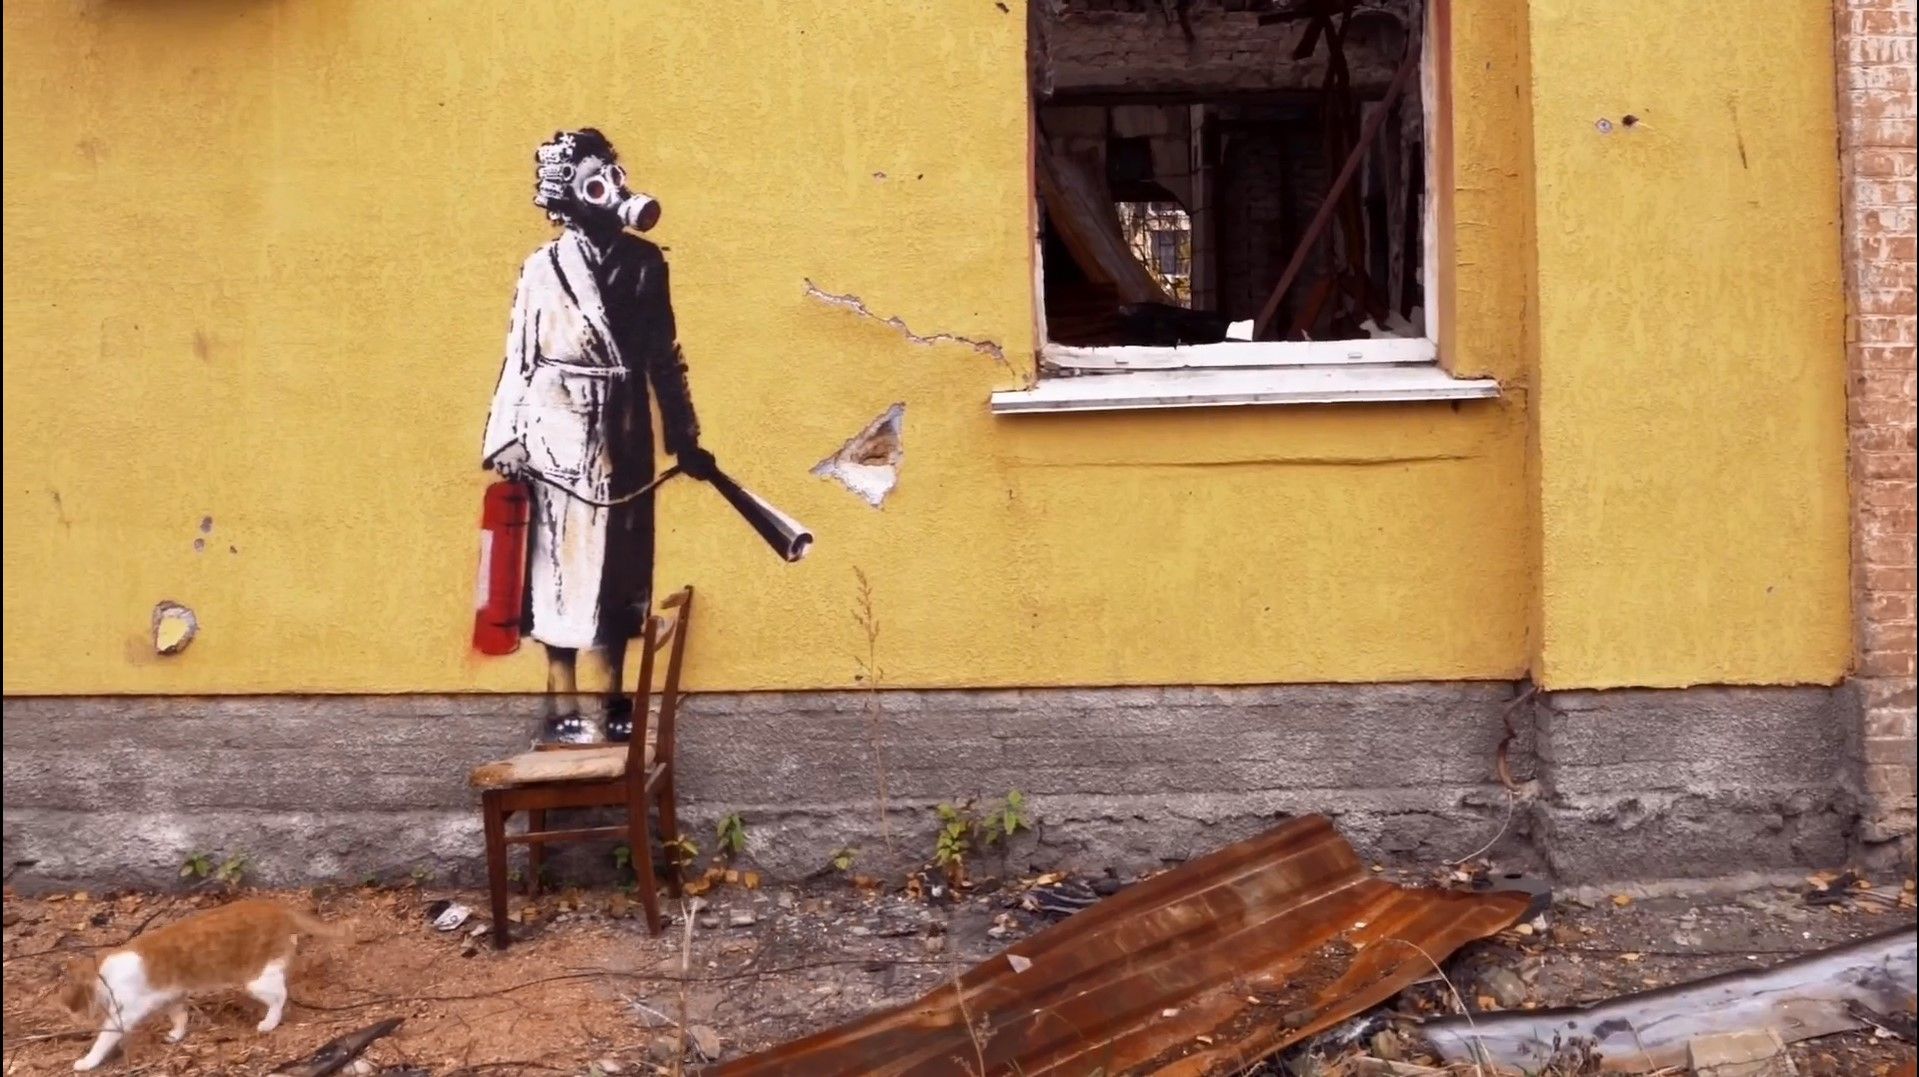 Бенкси создал граффити в Киевской области - видео его визита в Украину